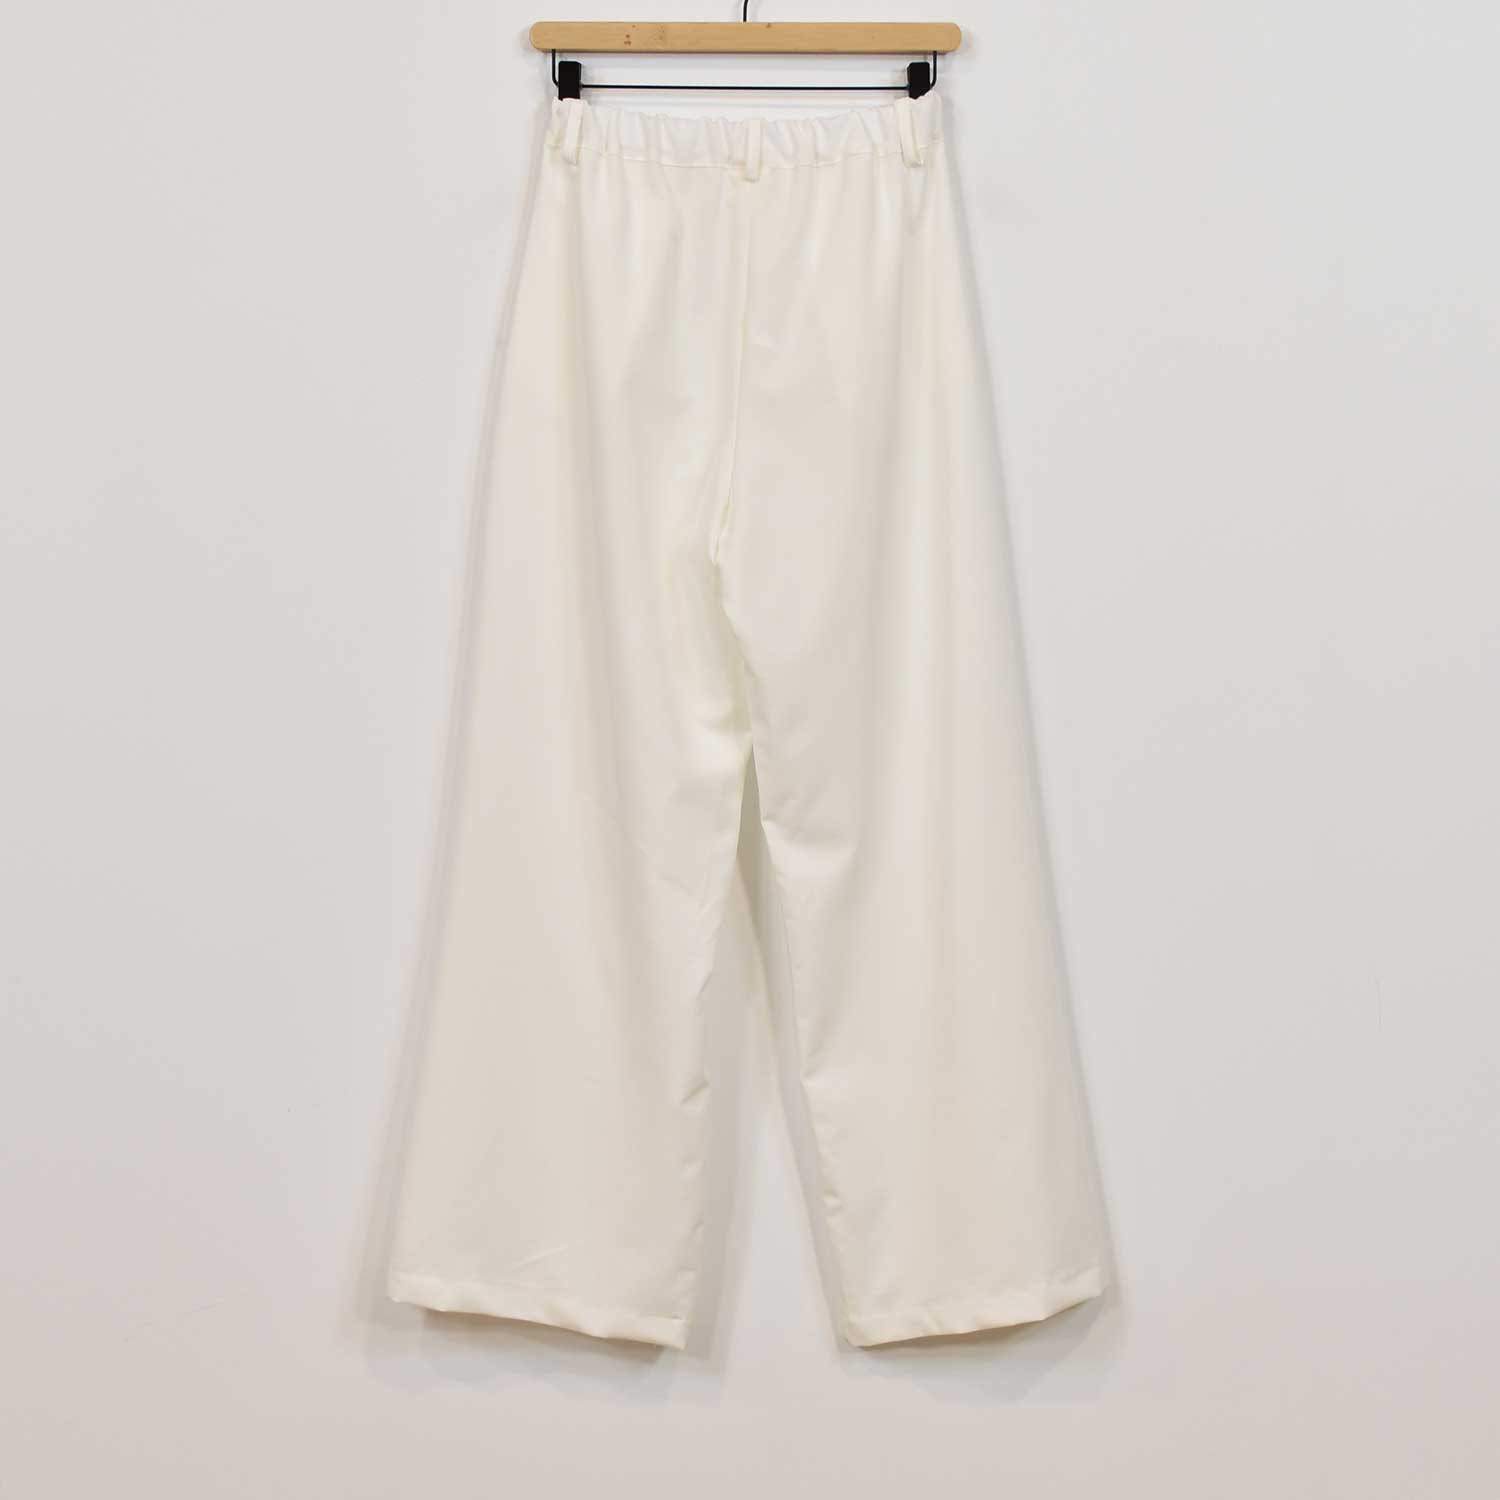 Pantalon jambe large blanc